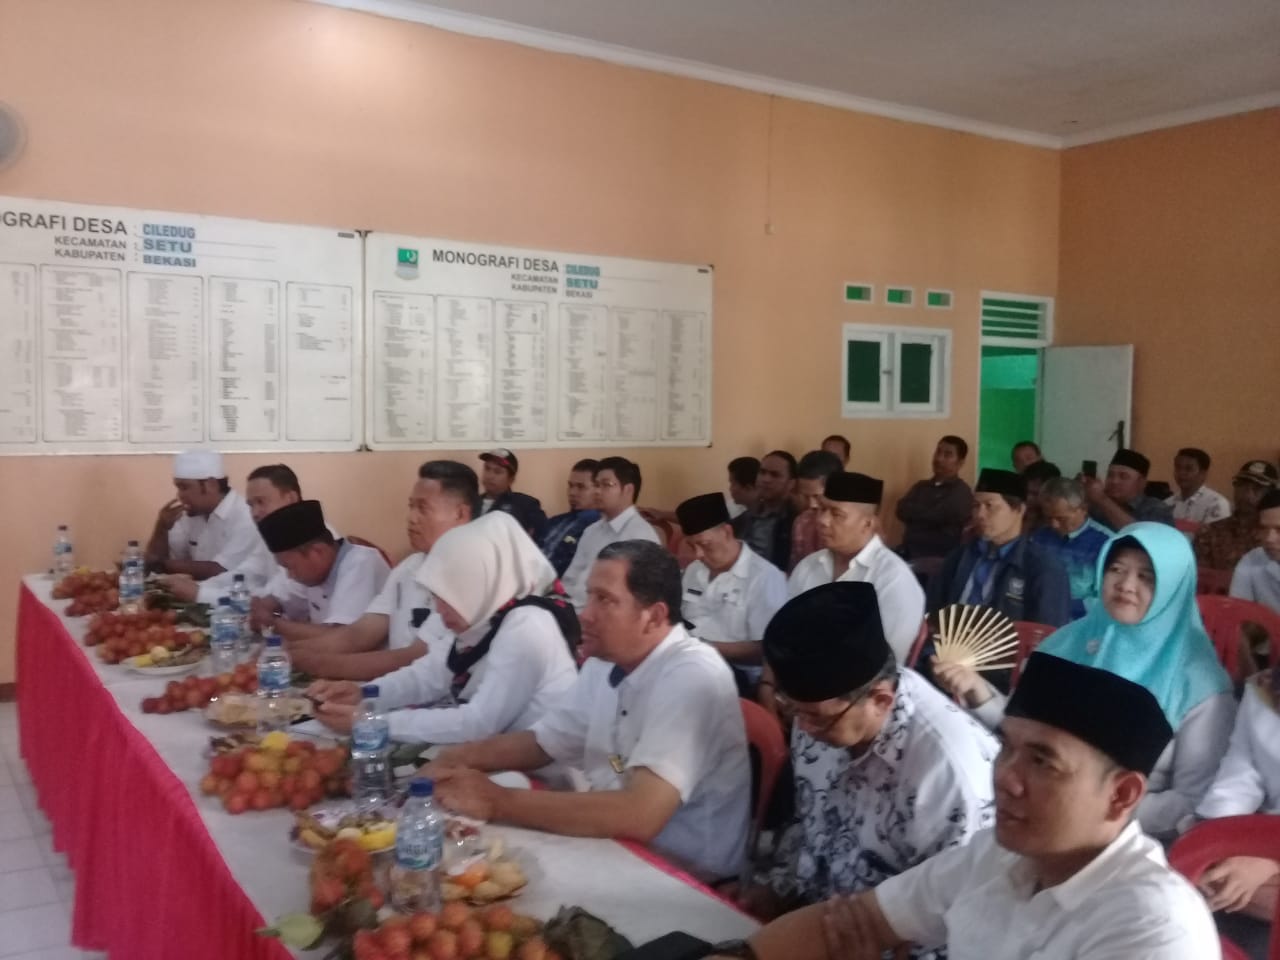 Masalah Keamanan dan Kesehatan Jadi Pembahasan di Minggon Kecamatan Setu - Desapedia